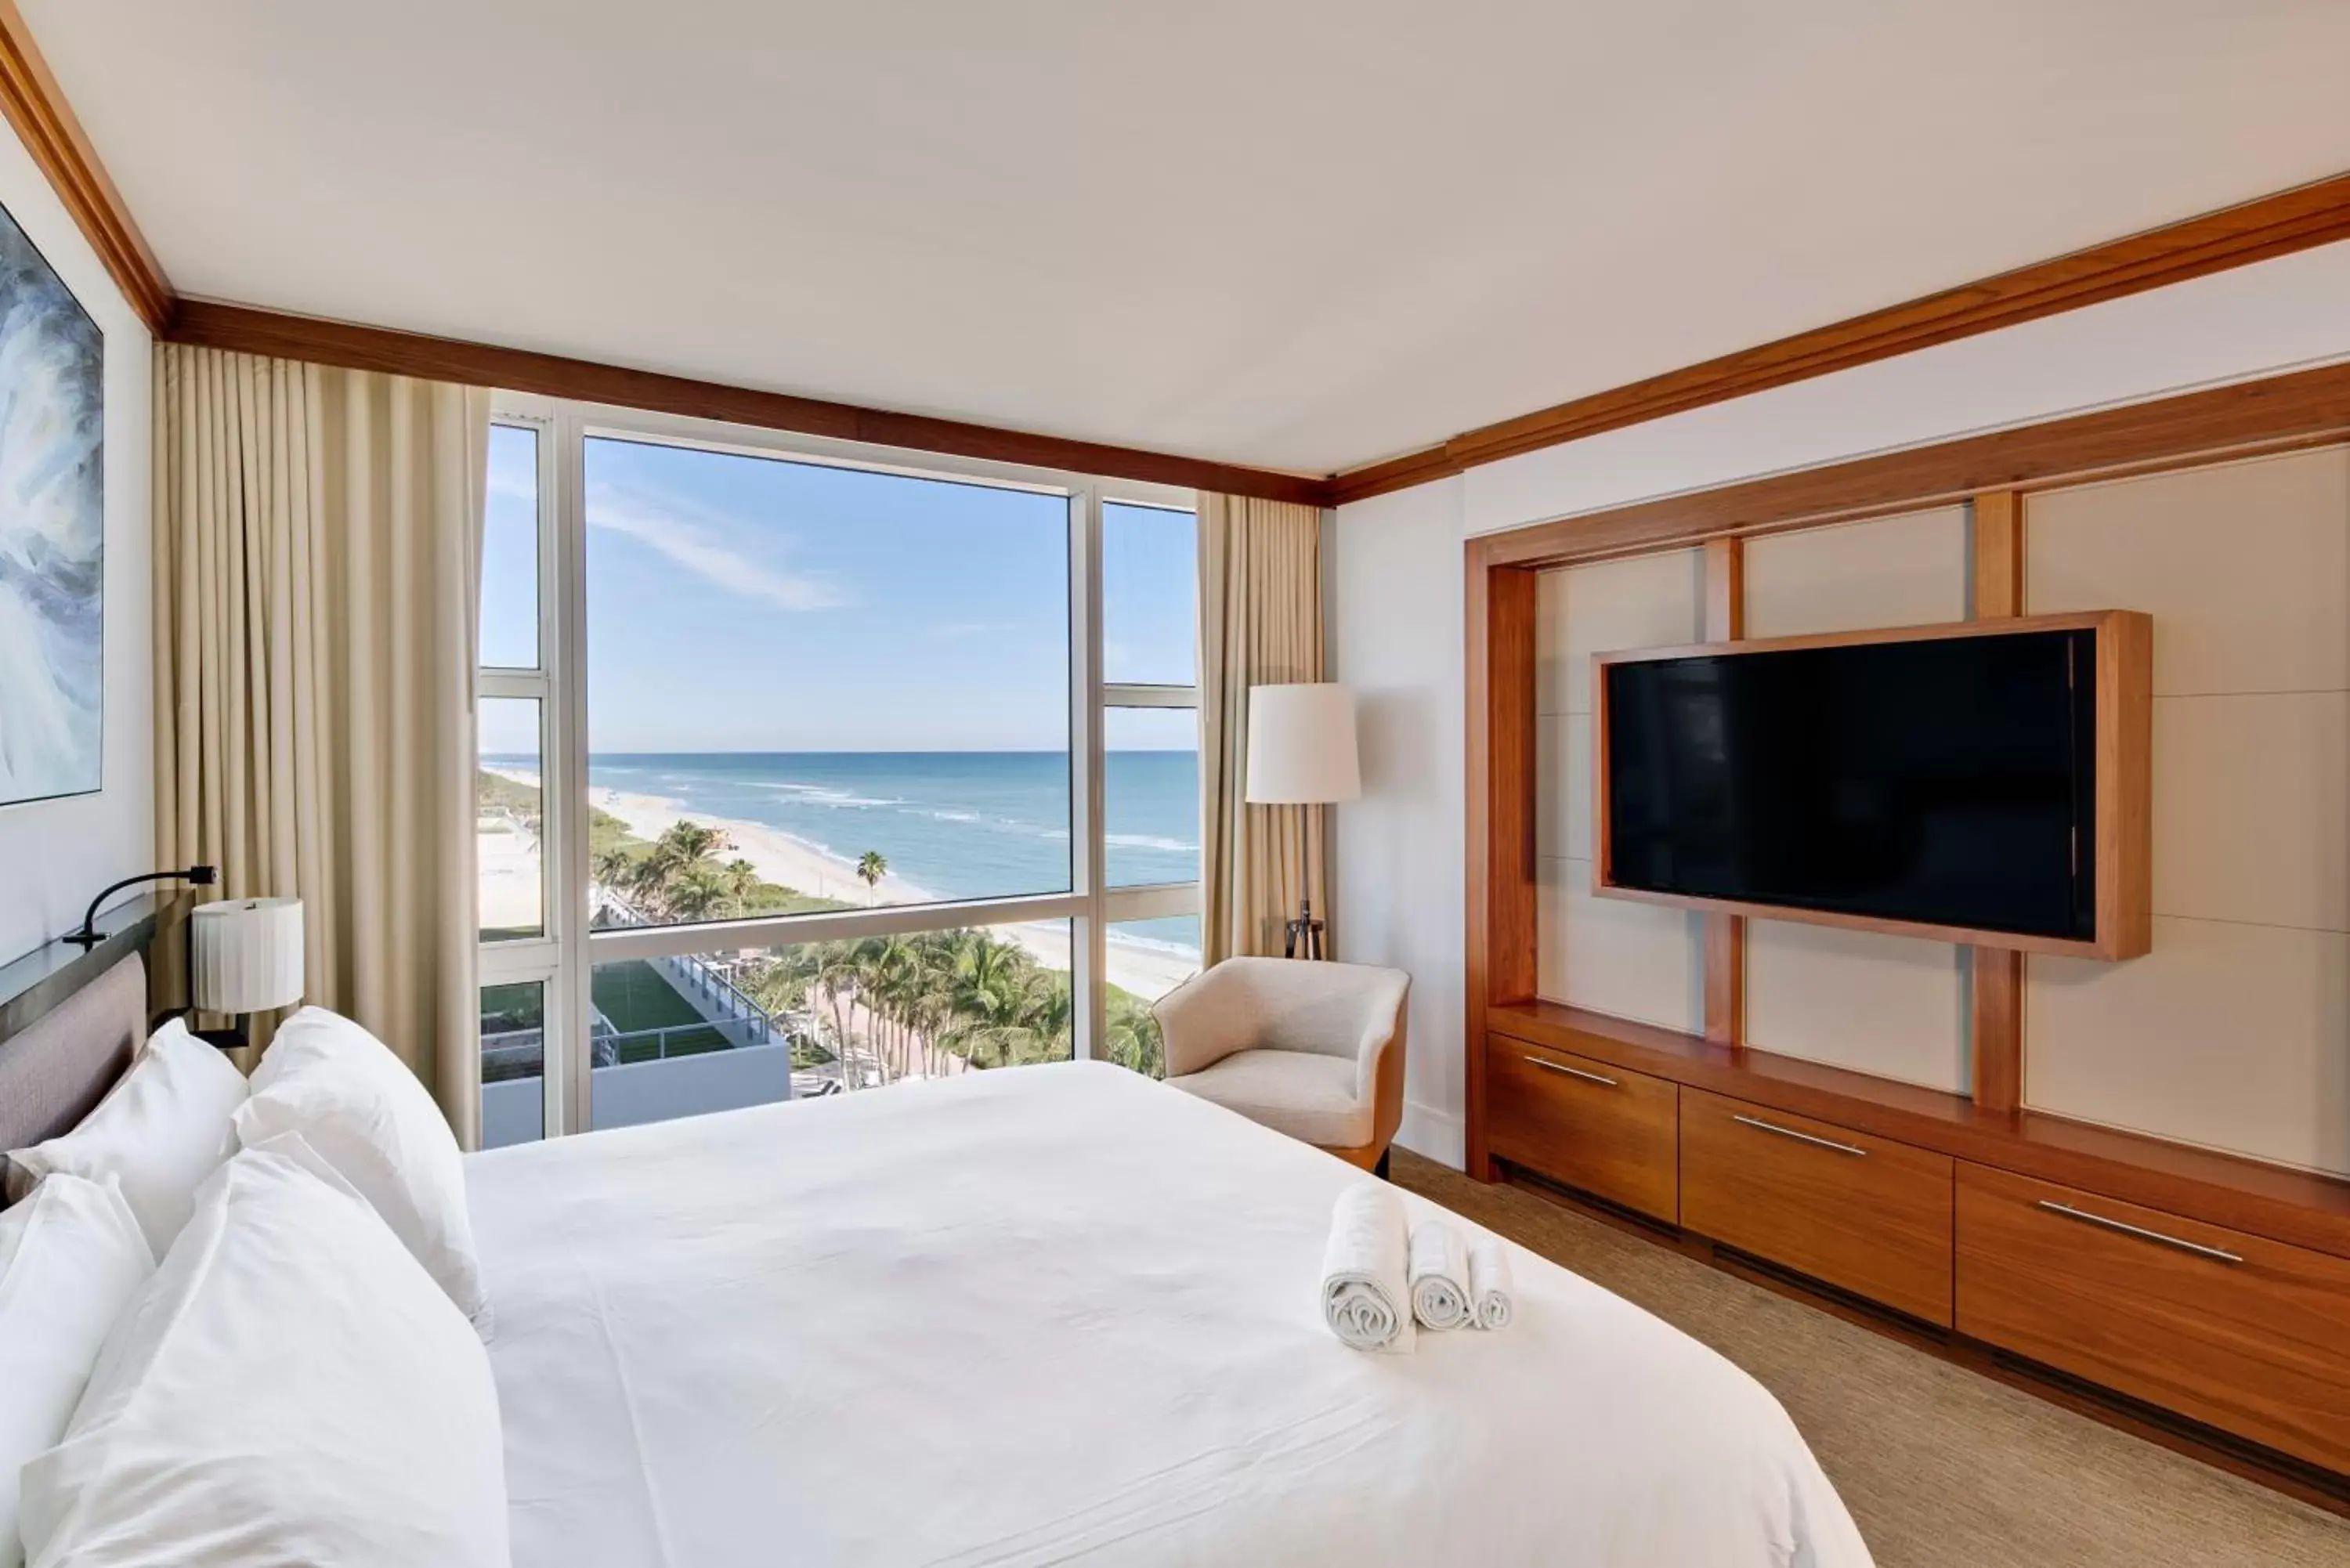 Sea view in Carillon Miami Wellness Resort